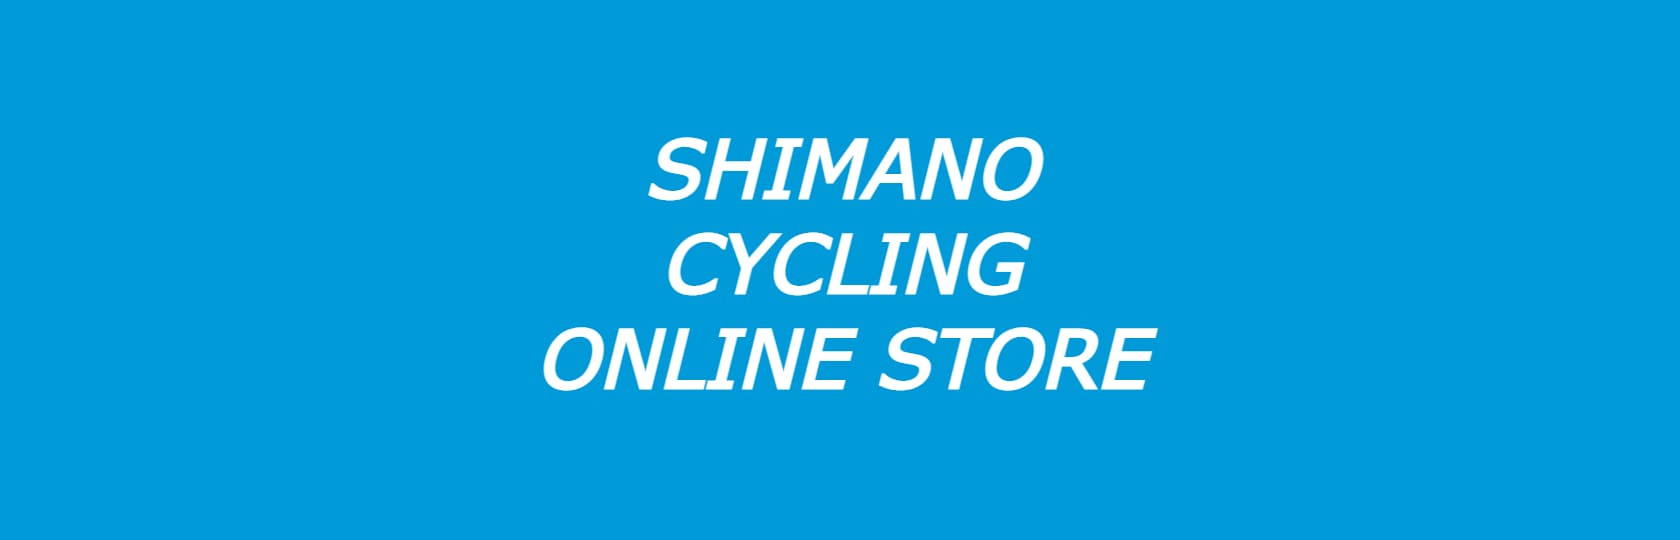 シマノ公式サイクリングオンラインストア